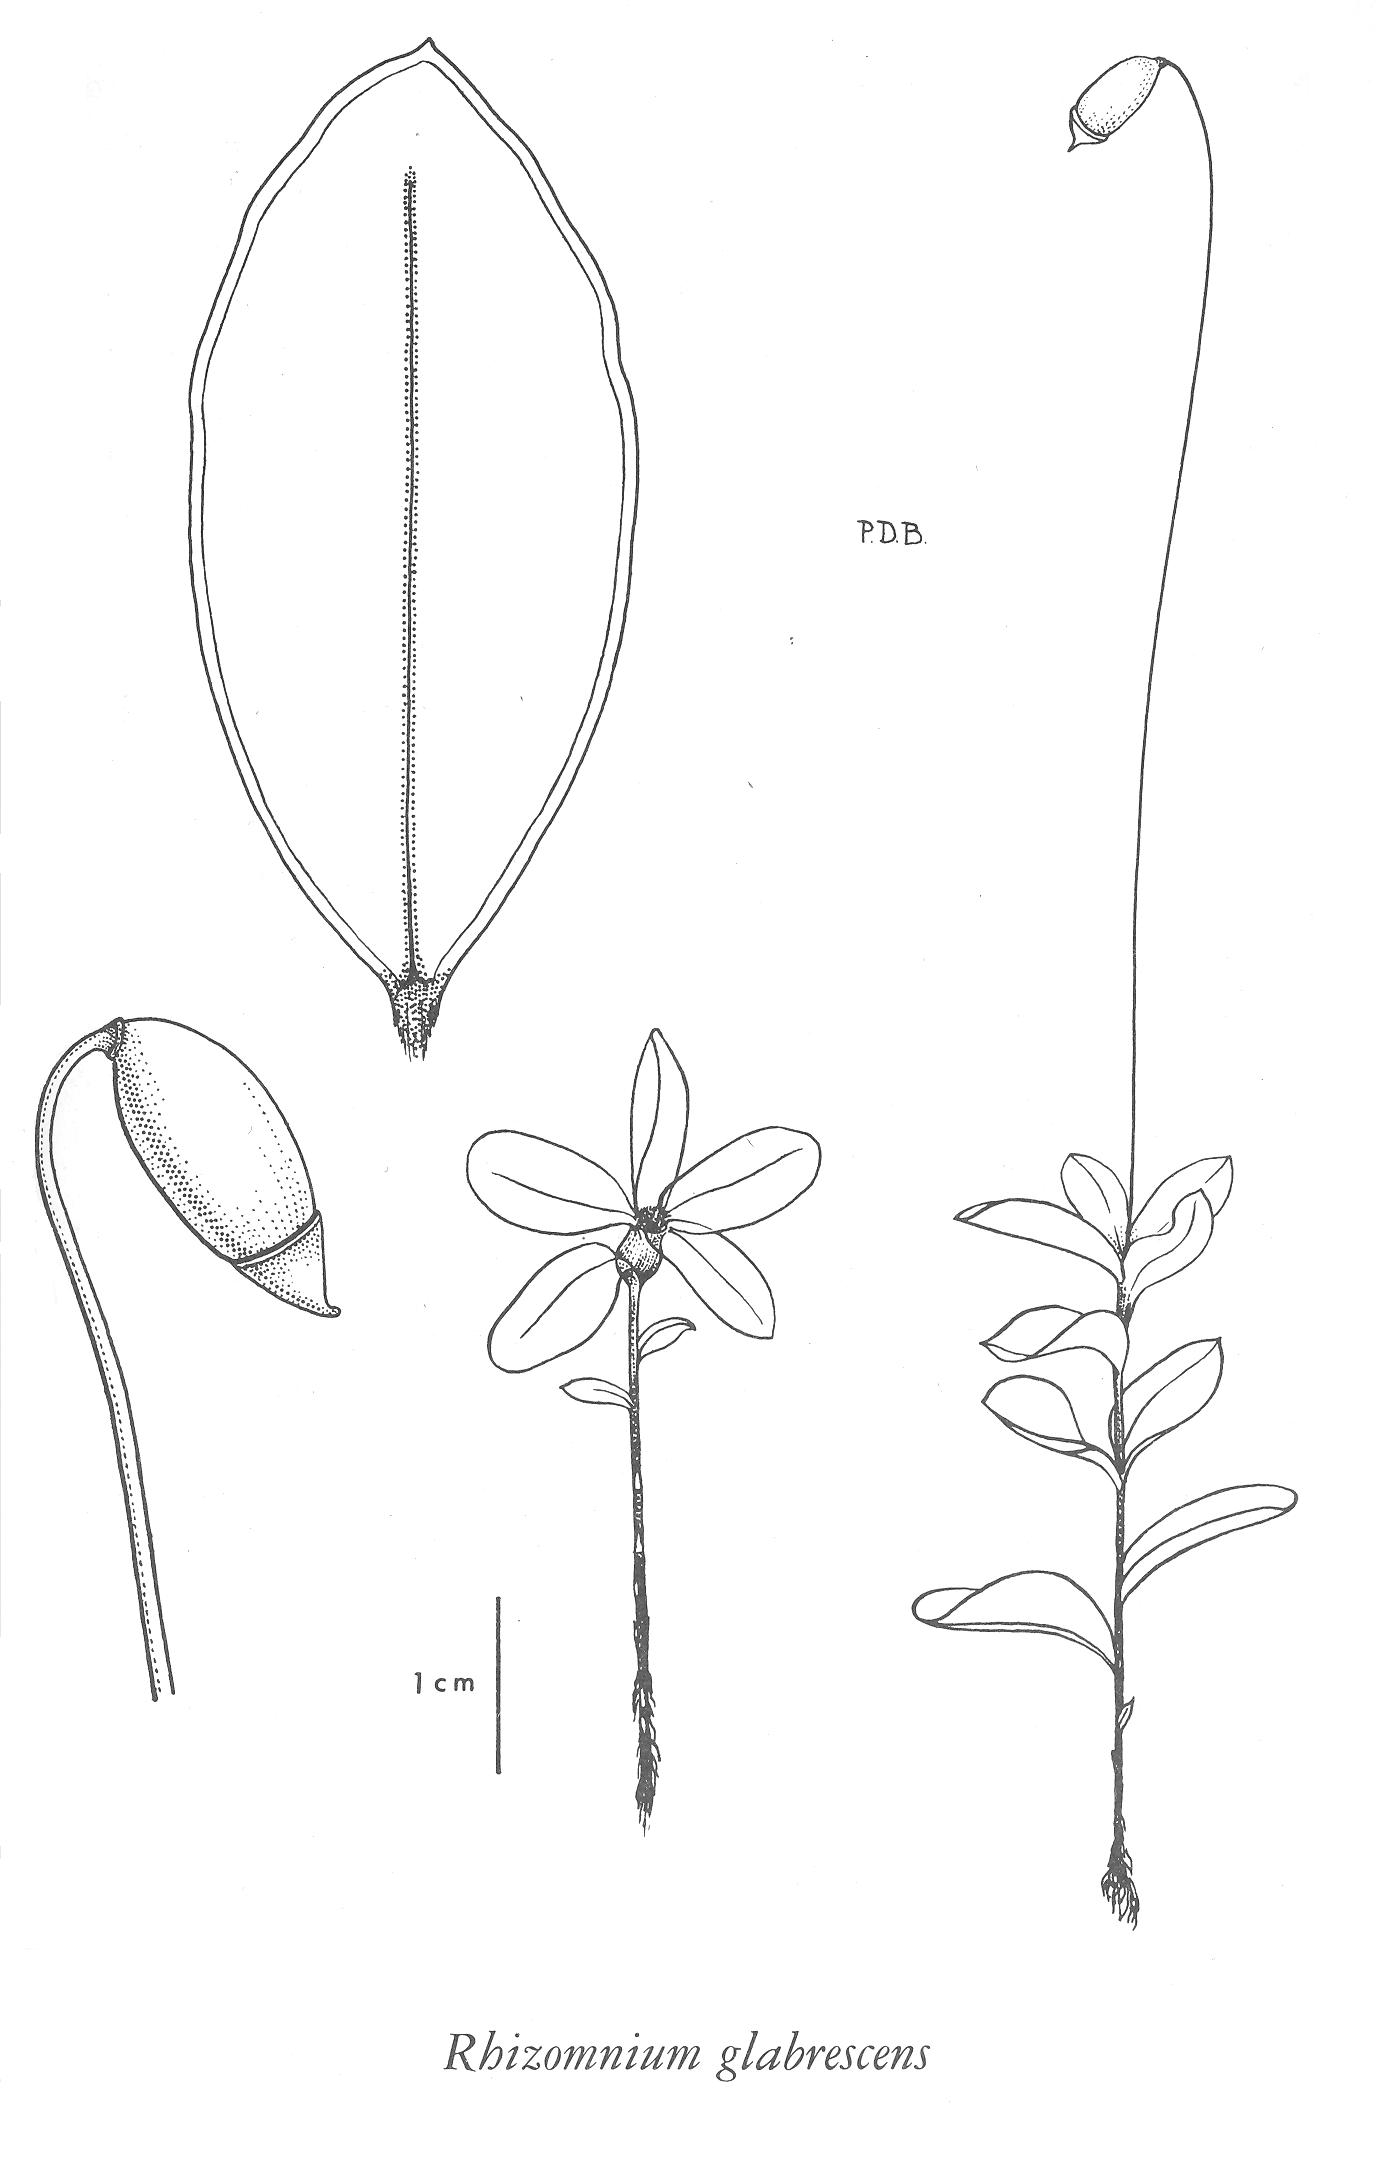 Botanical Drawing